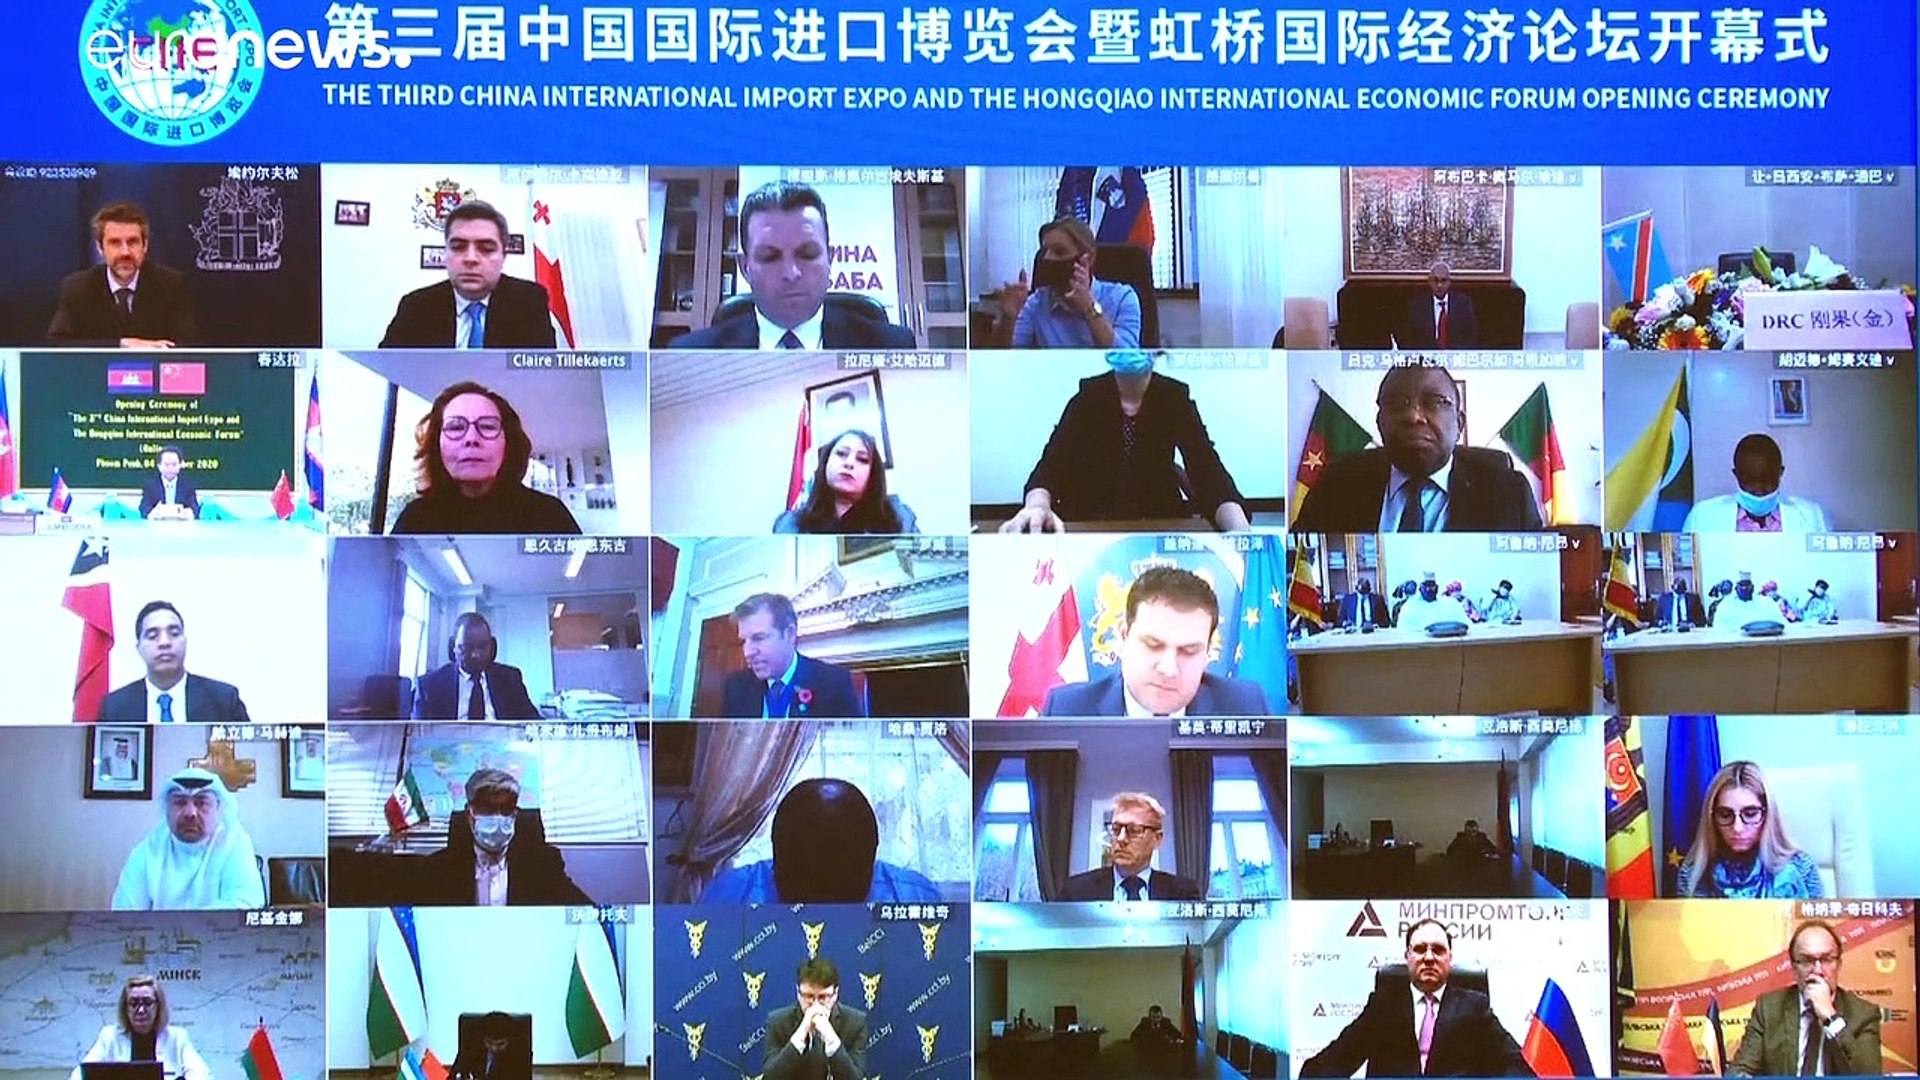 Új világrend kialakulásáról beszélt Orbán Viktor a kínai importexpón